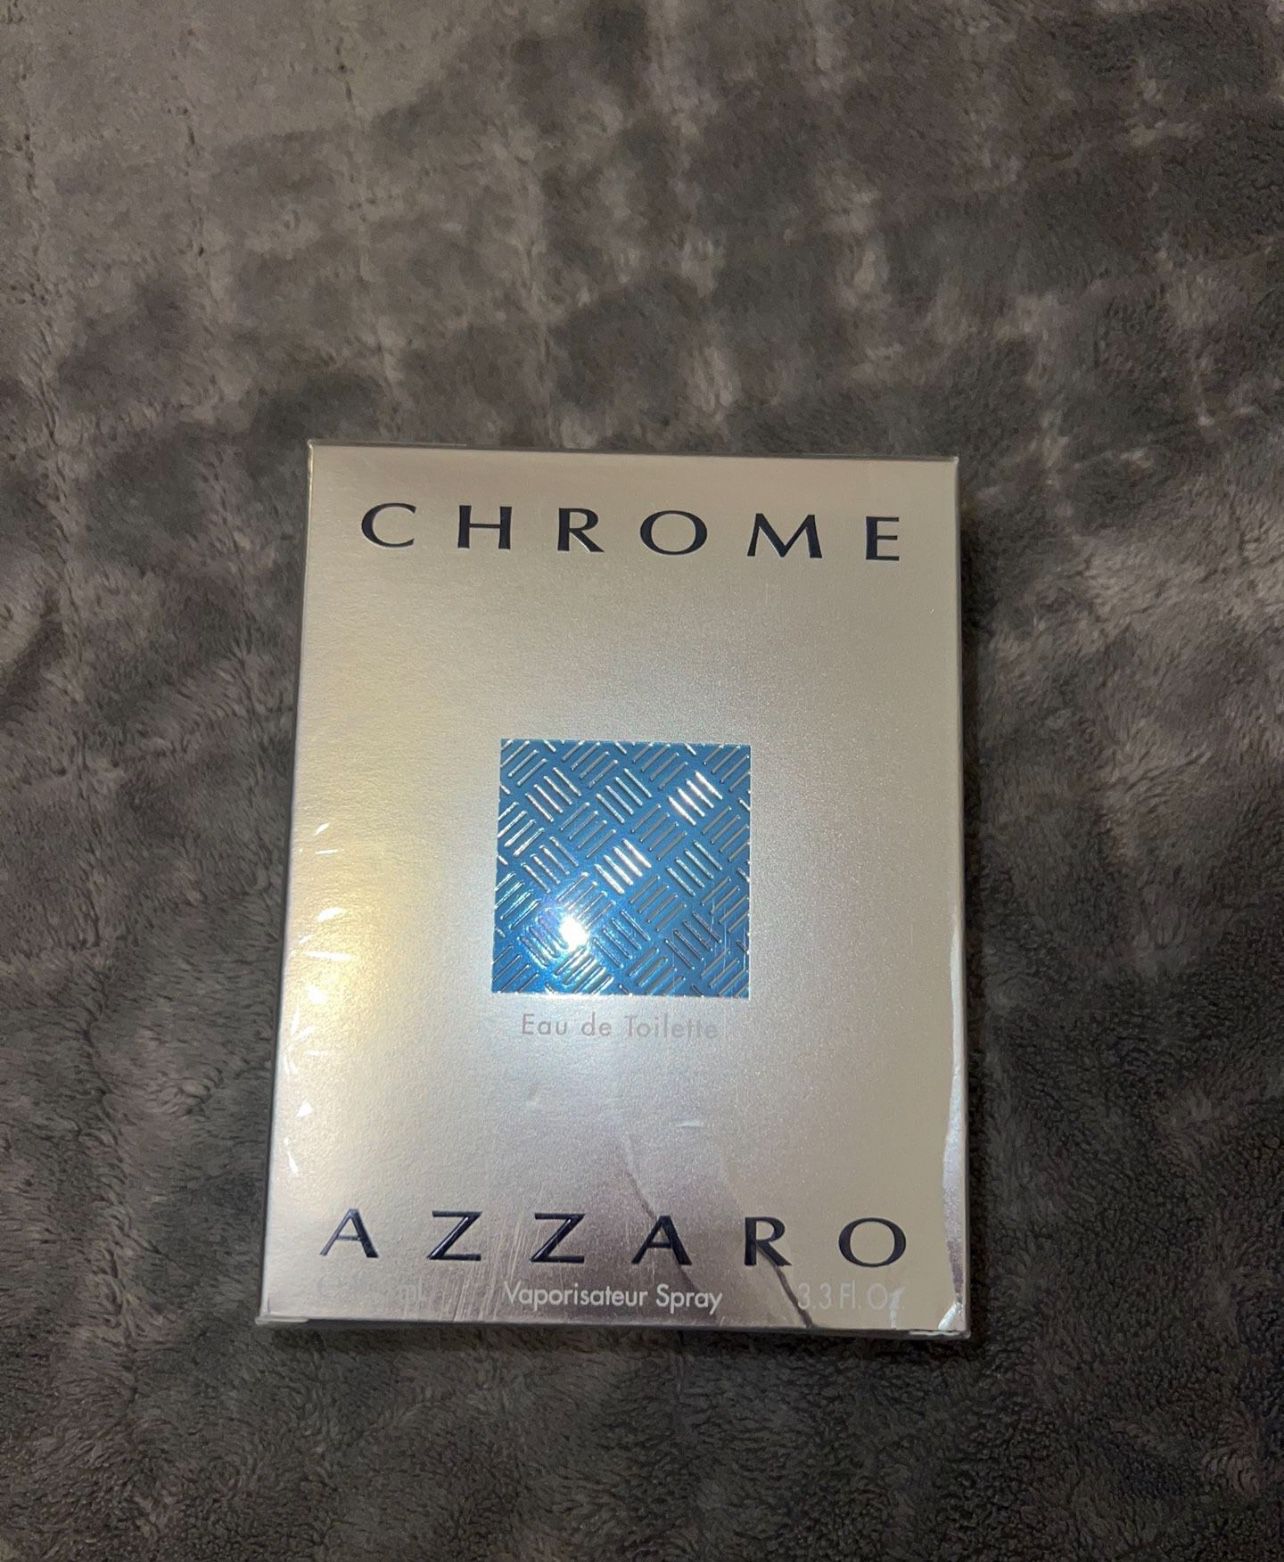 Chrome Azzaro Perfume 